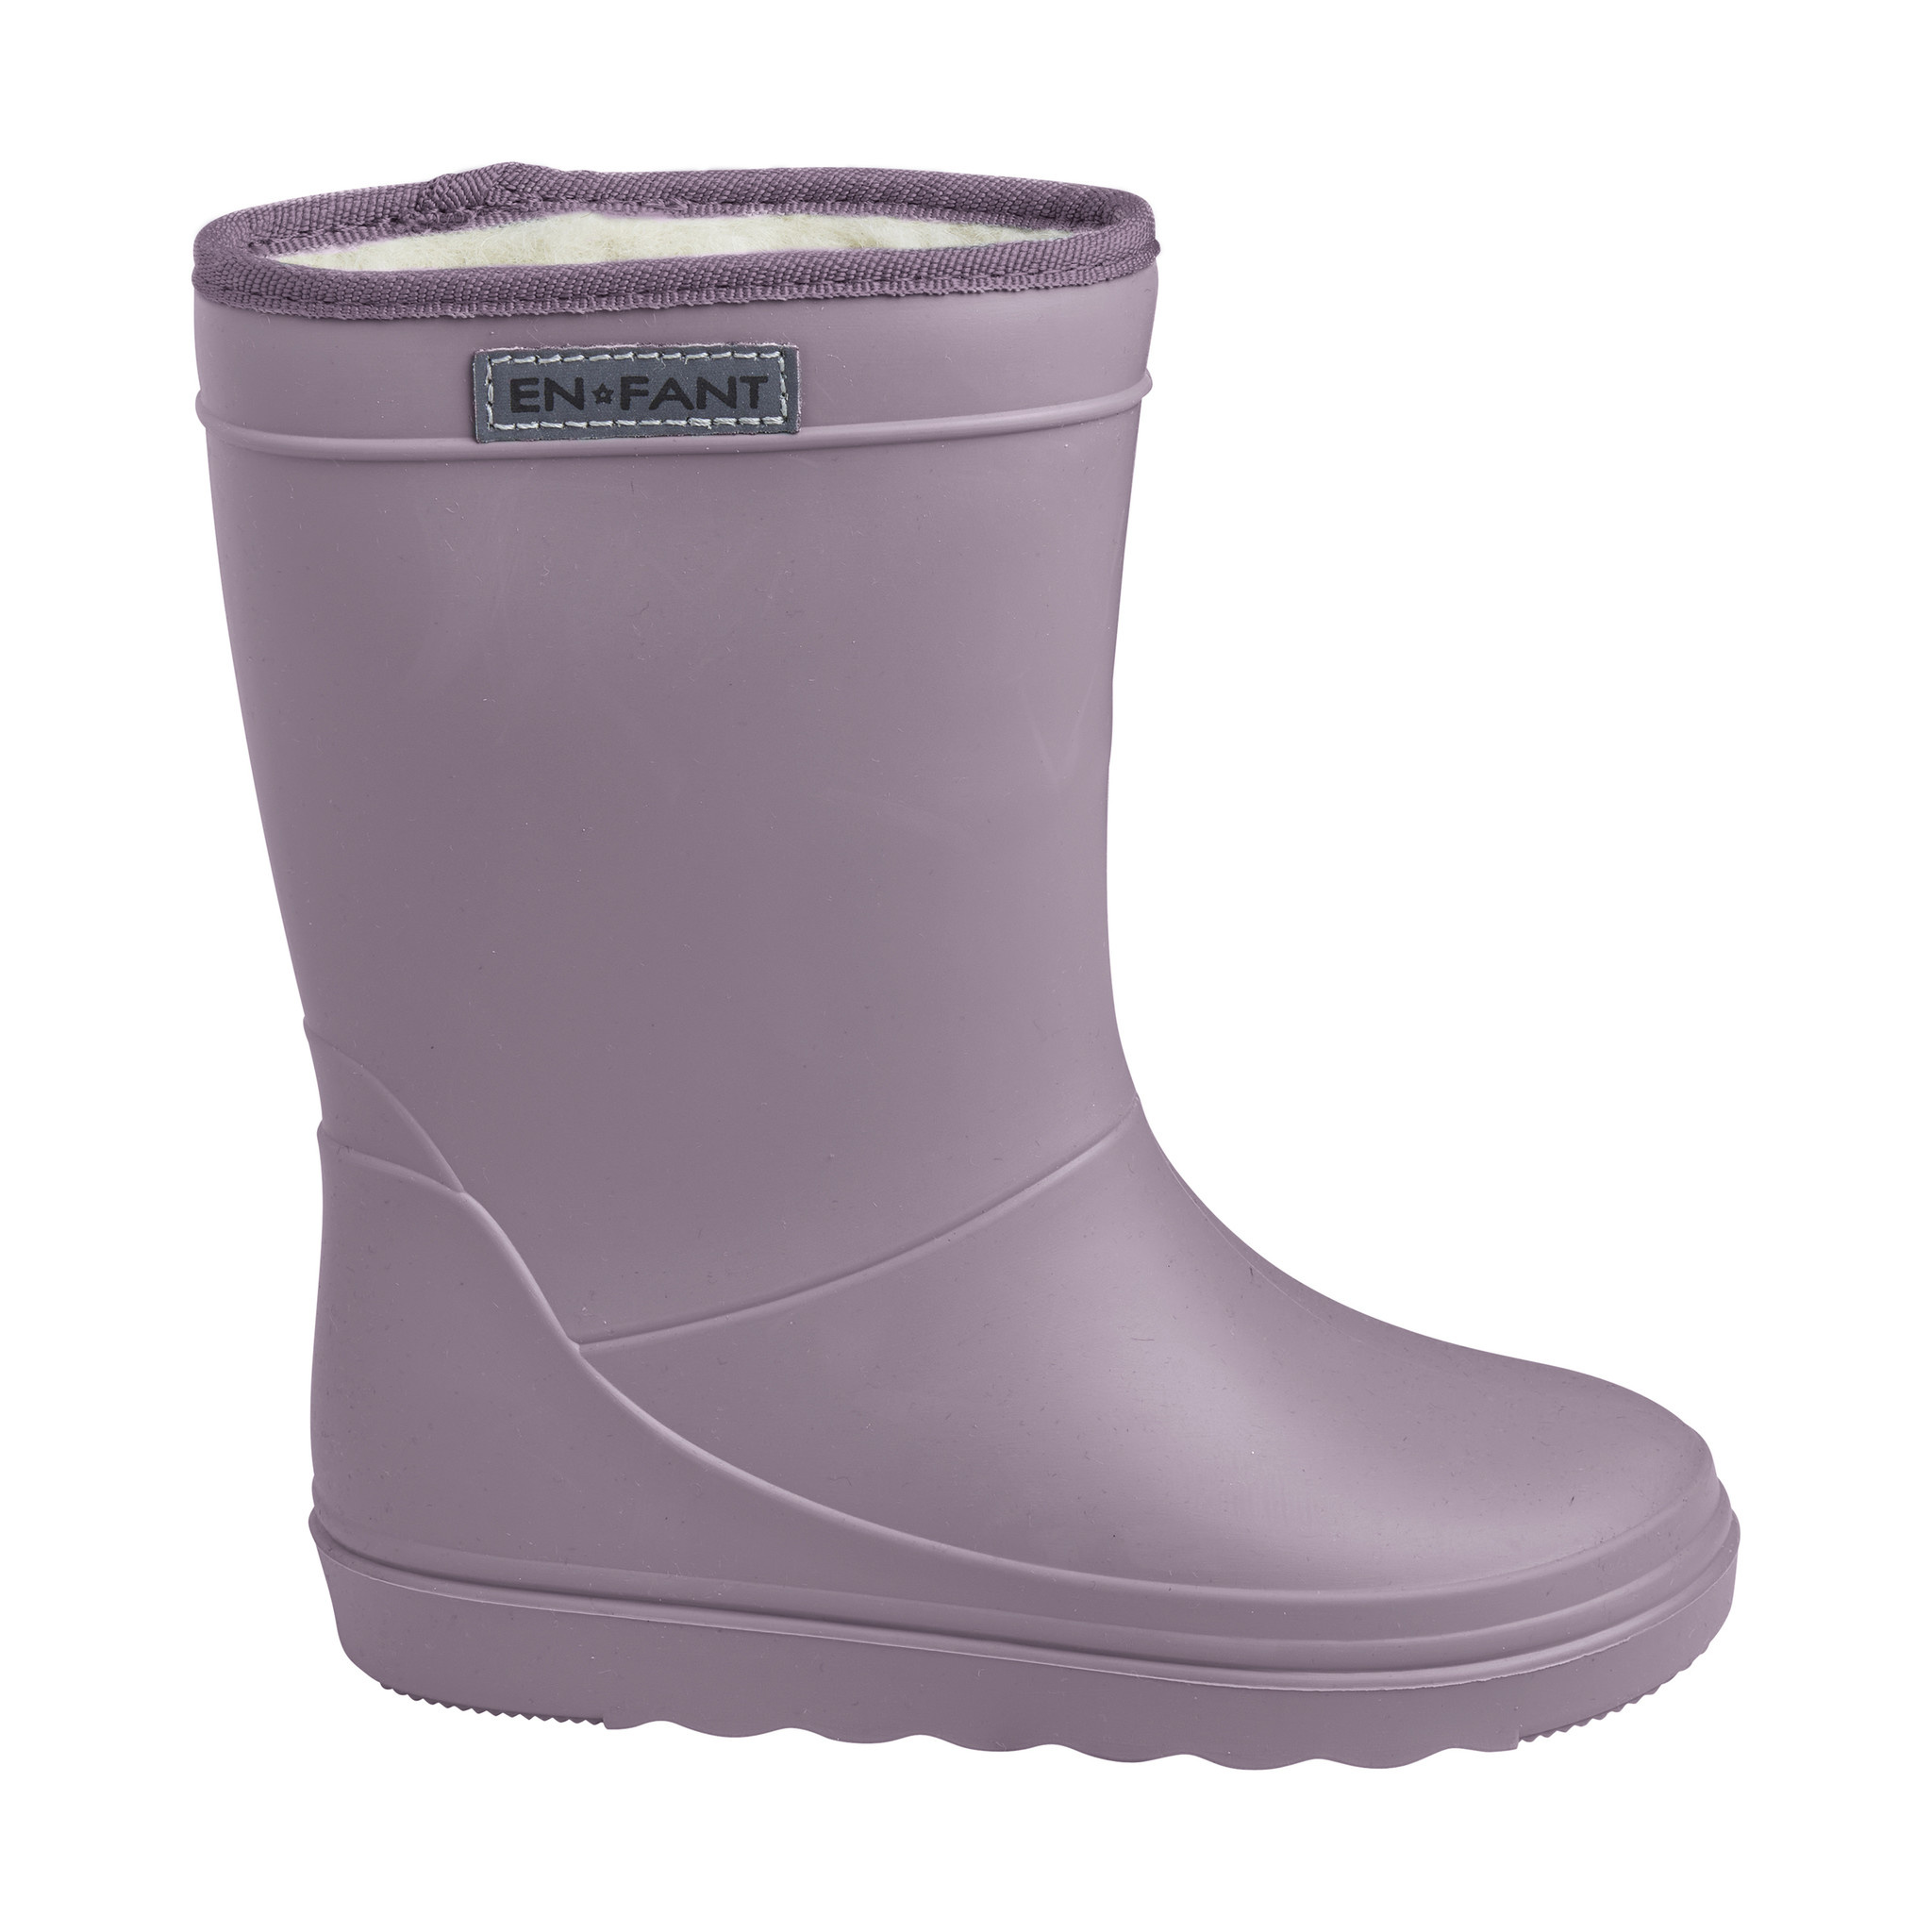 gevoerde regenlaarzen volwassenen - thermo boots print - 6405 - paars - Milck